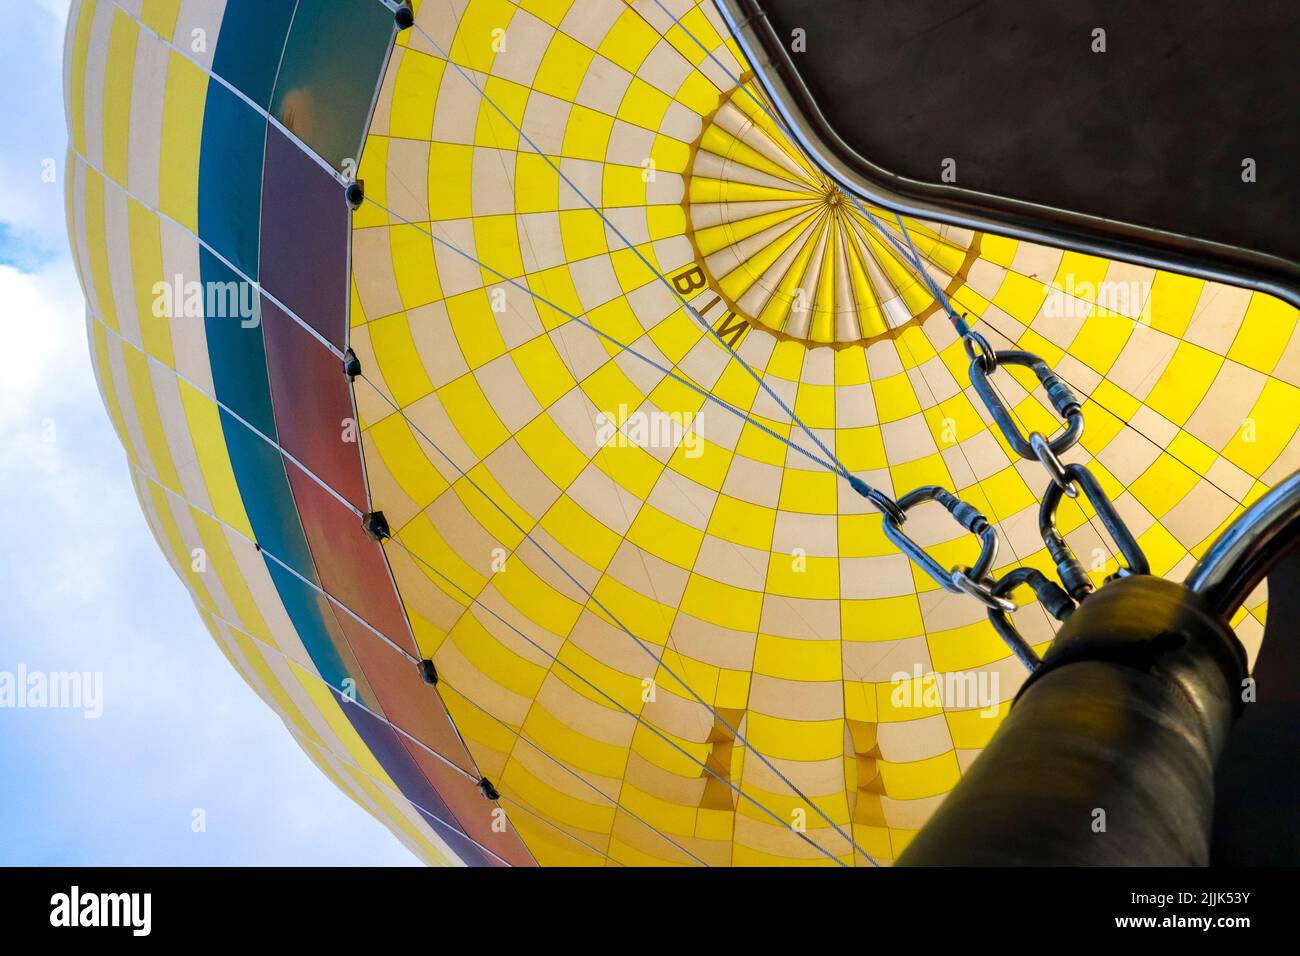 detalle de la cubierta interior de un globo de aire caliente Foto de stock